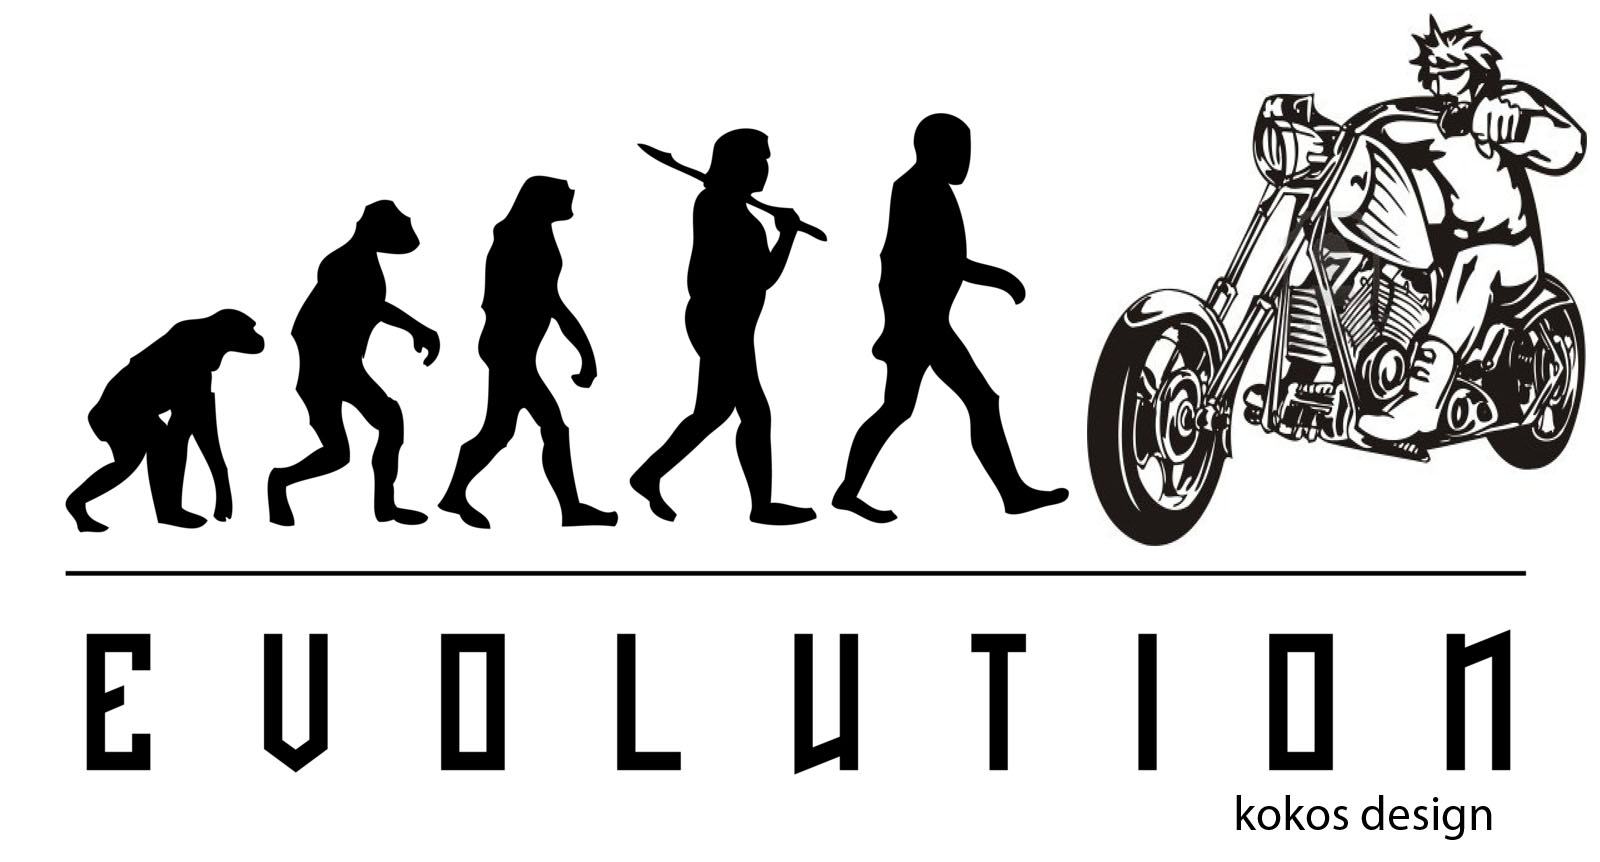 Obrázek edit evolution